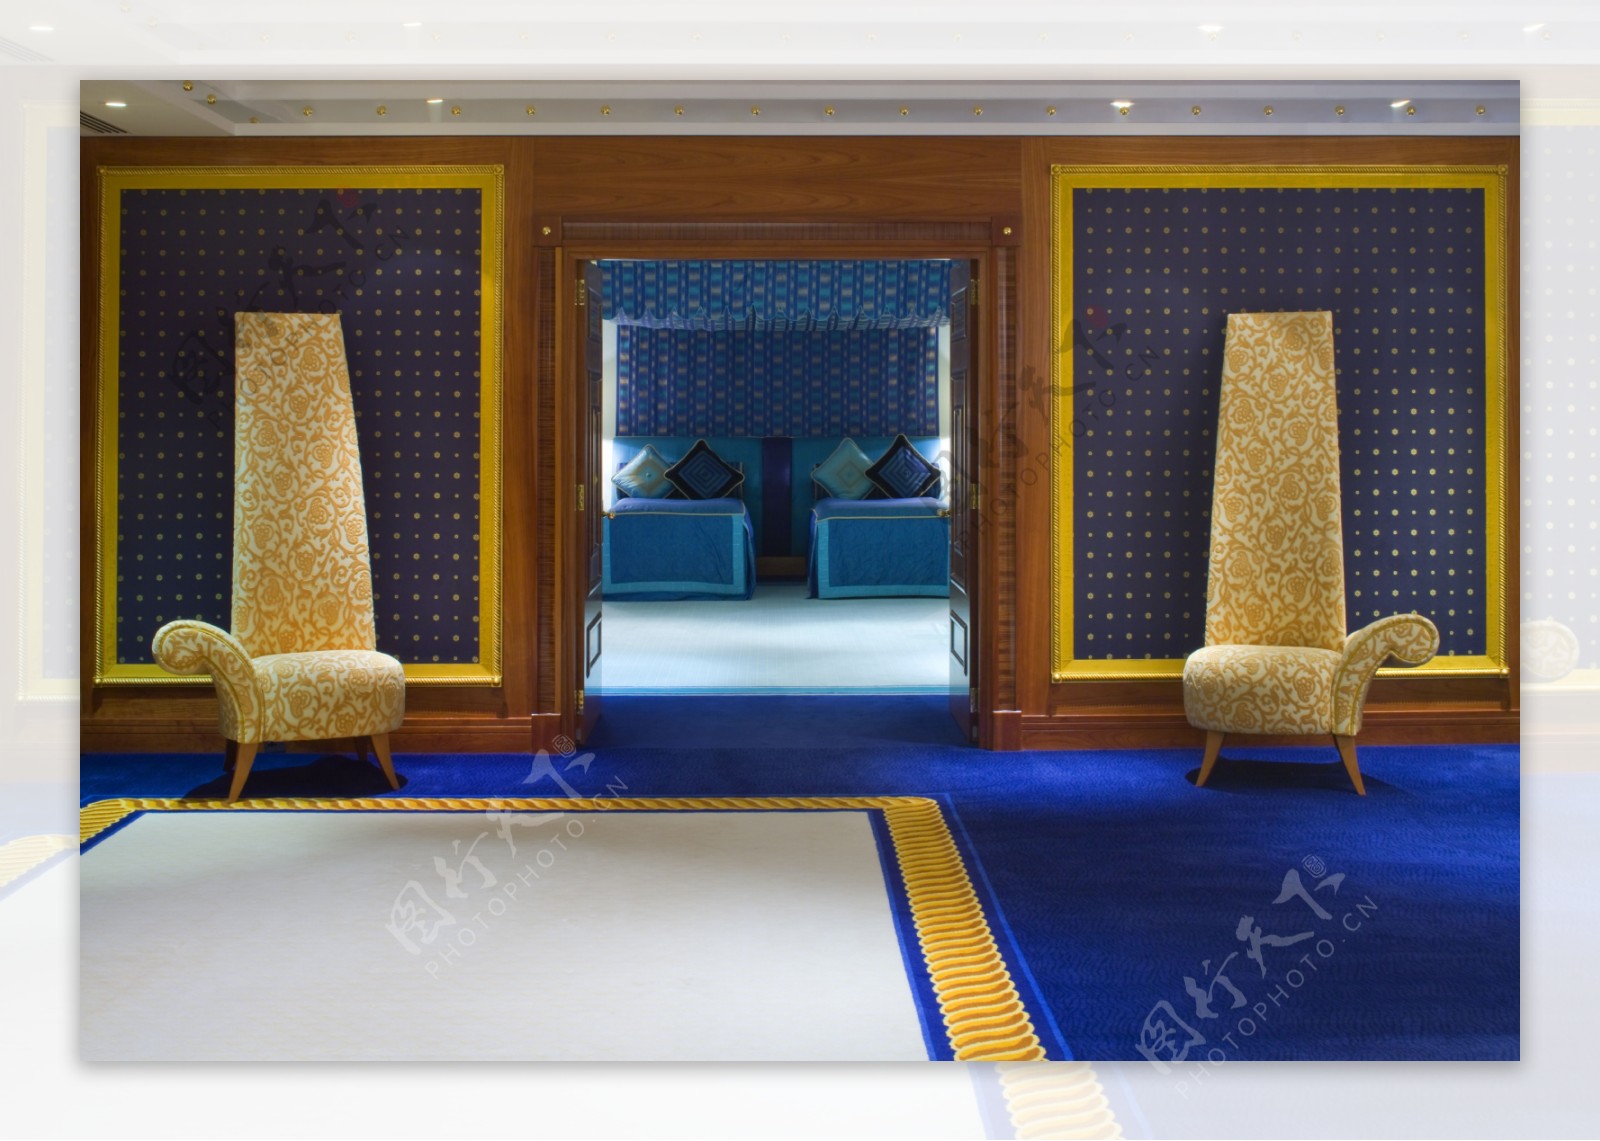 迪拜帆船酒店官方专业高清大图图片